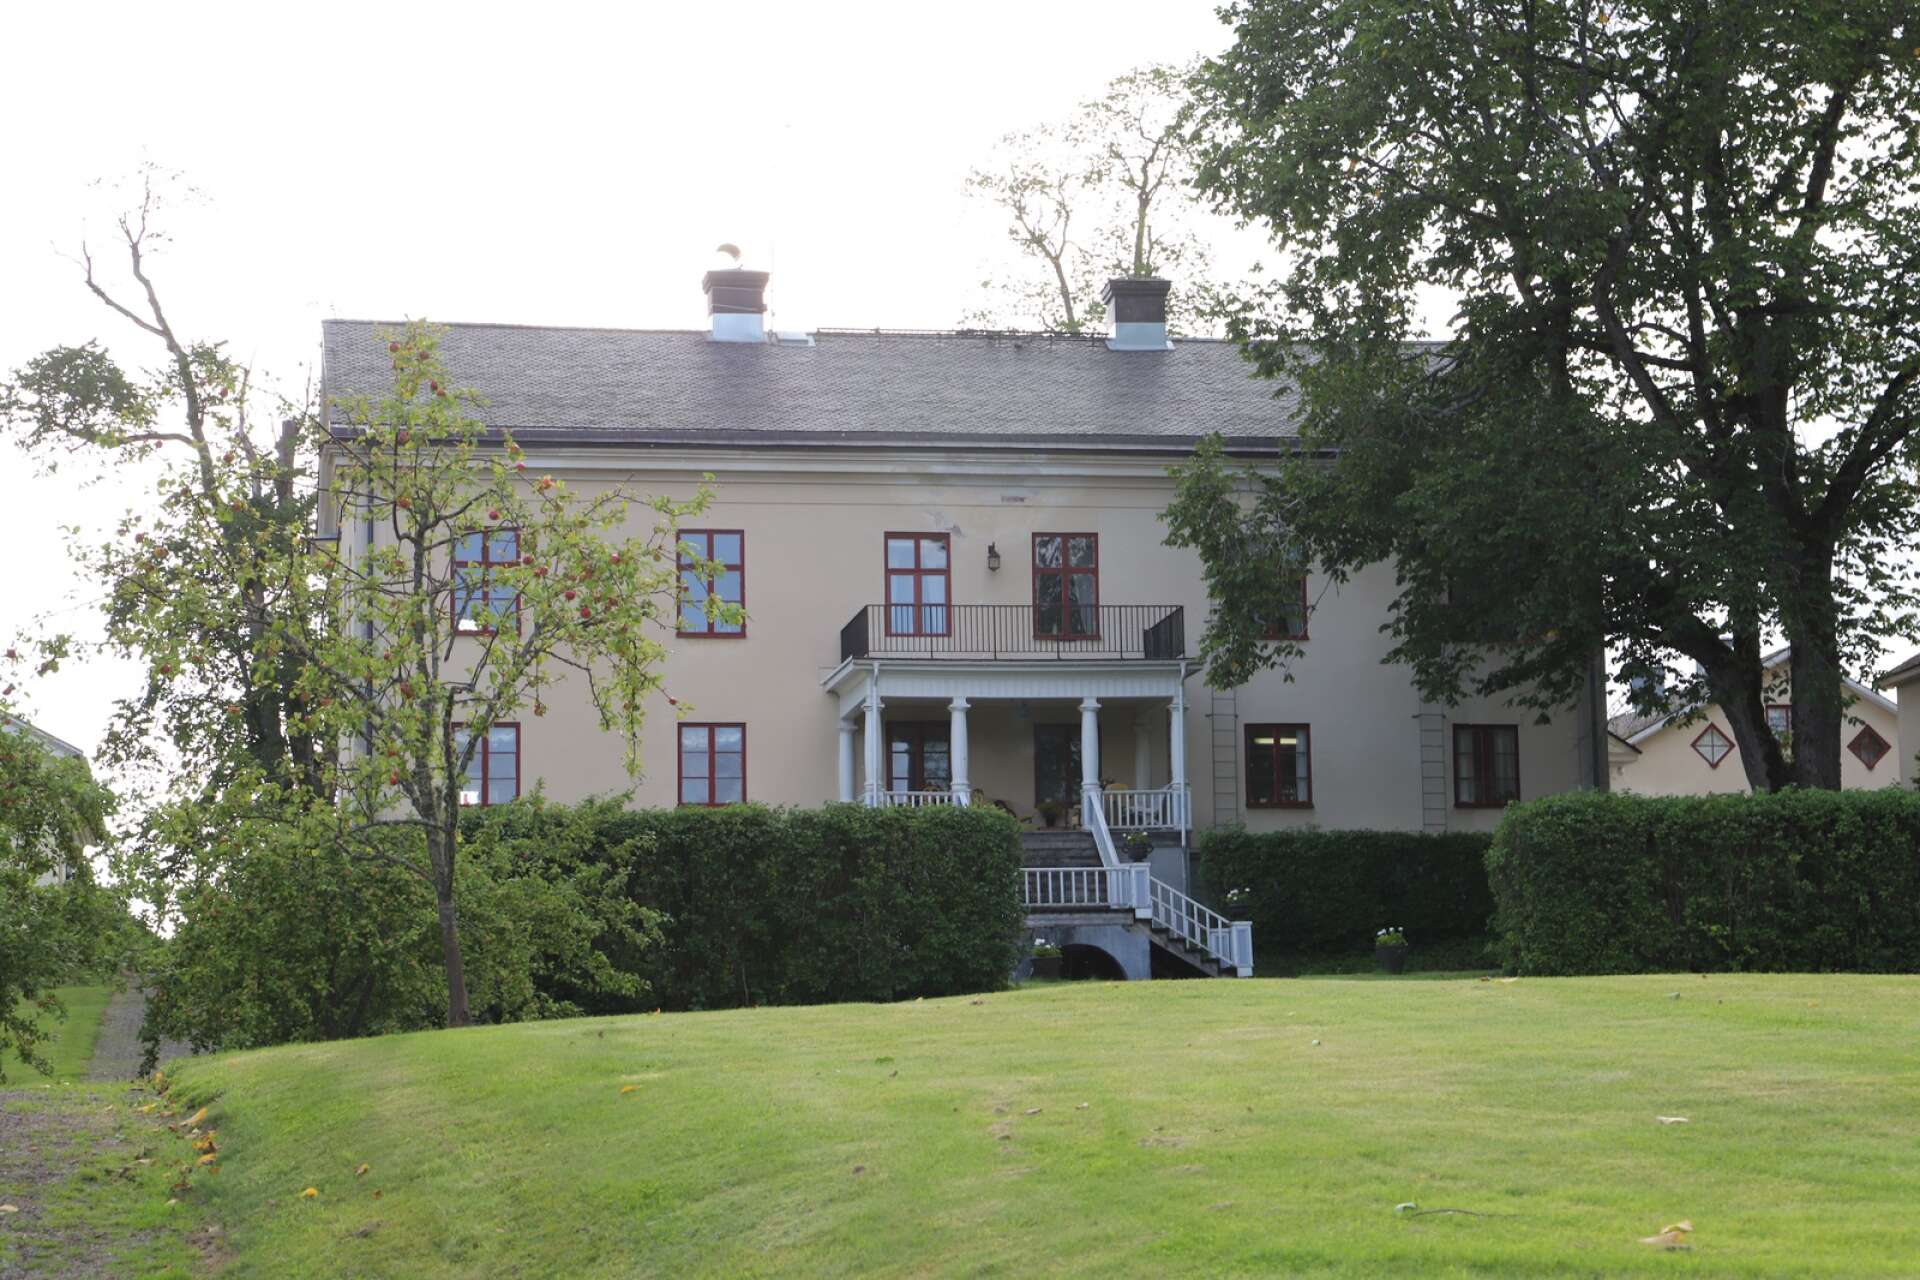 På Saxå herrgård har släkten Berggren långa rötter, men idag är den inte längre en släktgård. Carl Jan Granqvist har i många år bott här och ägt gården, men har skänkt den till en stiftelse han bildat.